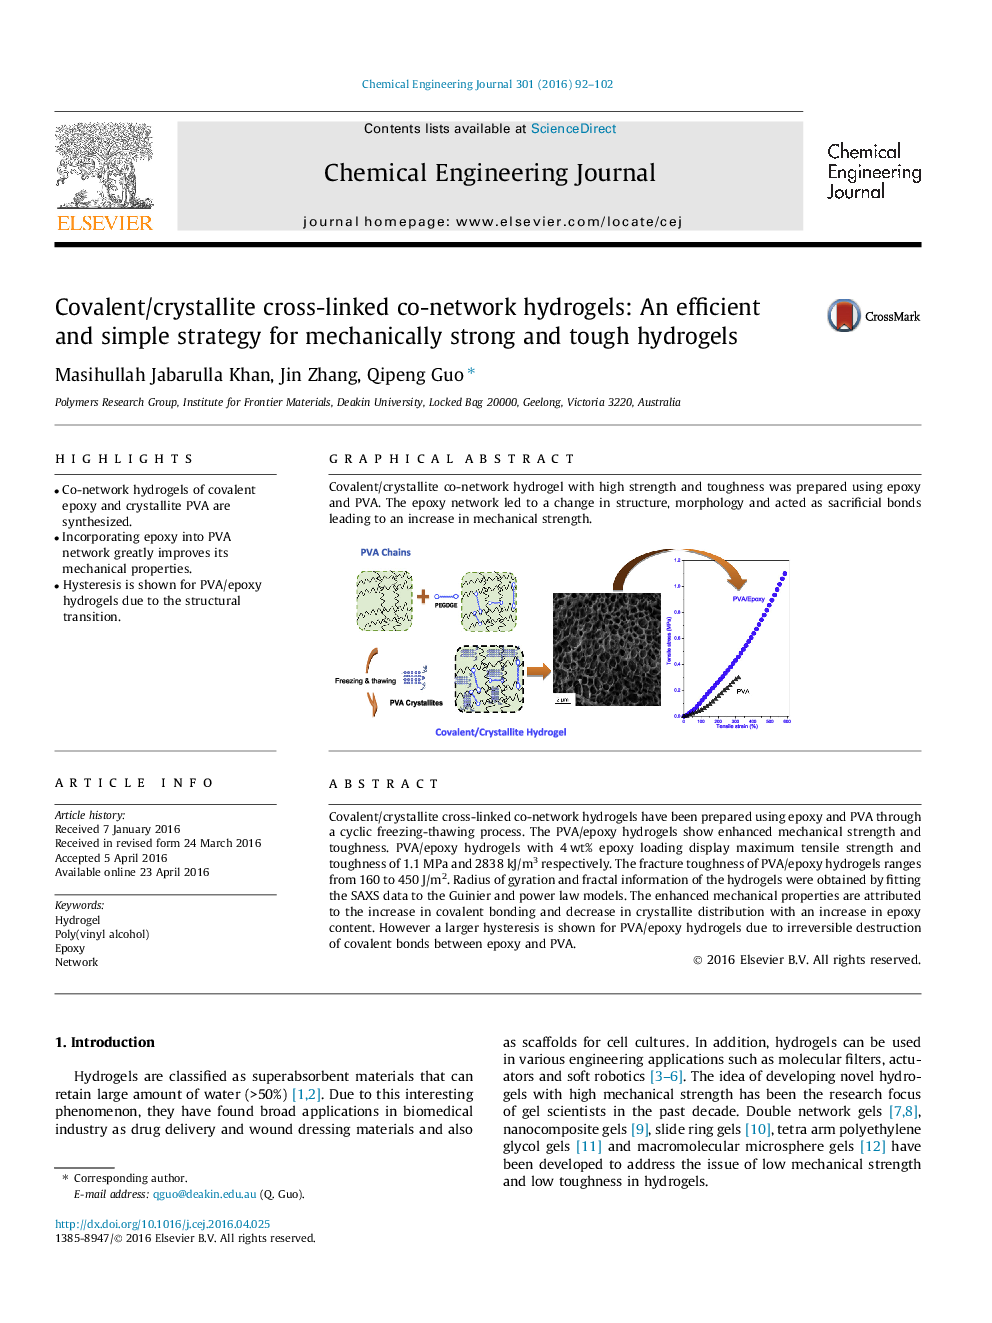 هیدروژل های مشترک شبکه کوانتومی / کریستالیت: یک راهبرد کارآمد و ساده برای هیدروژل های قوی و سخت 